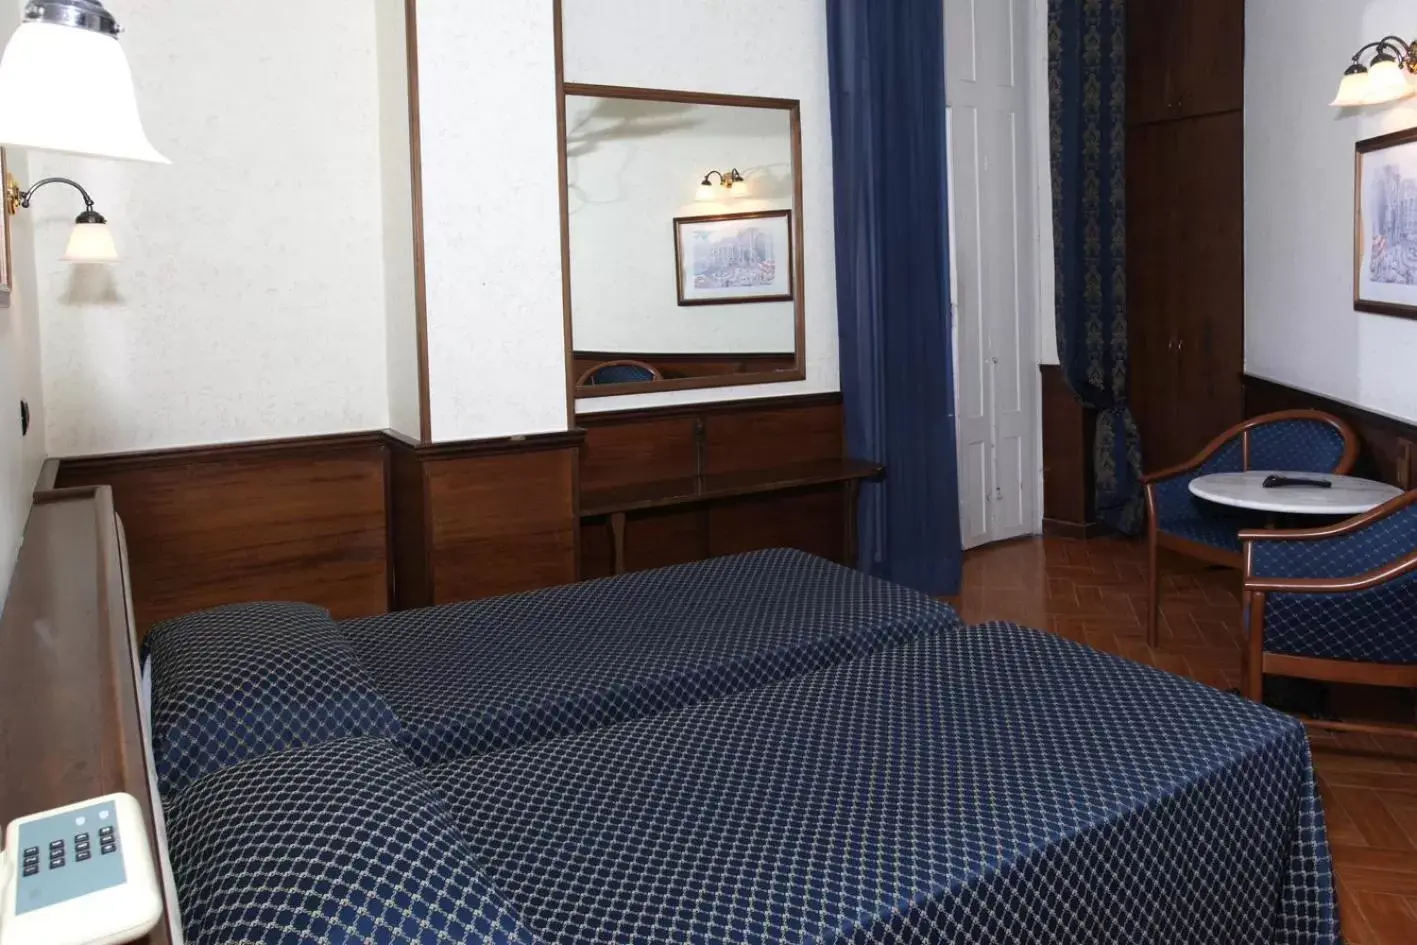 Bed in Hotel Nardizzi Americana